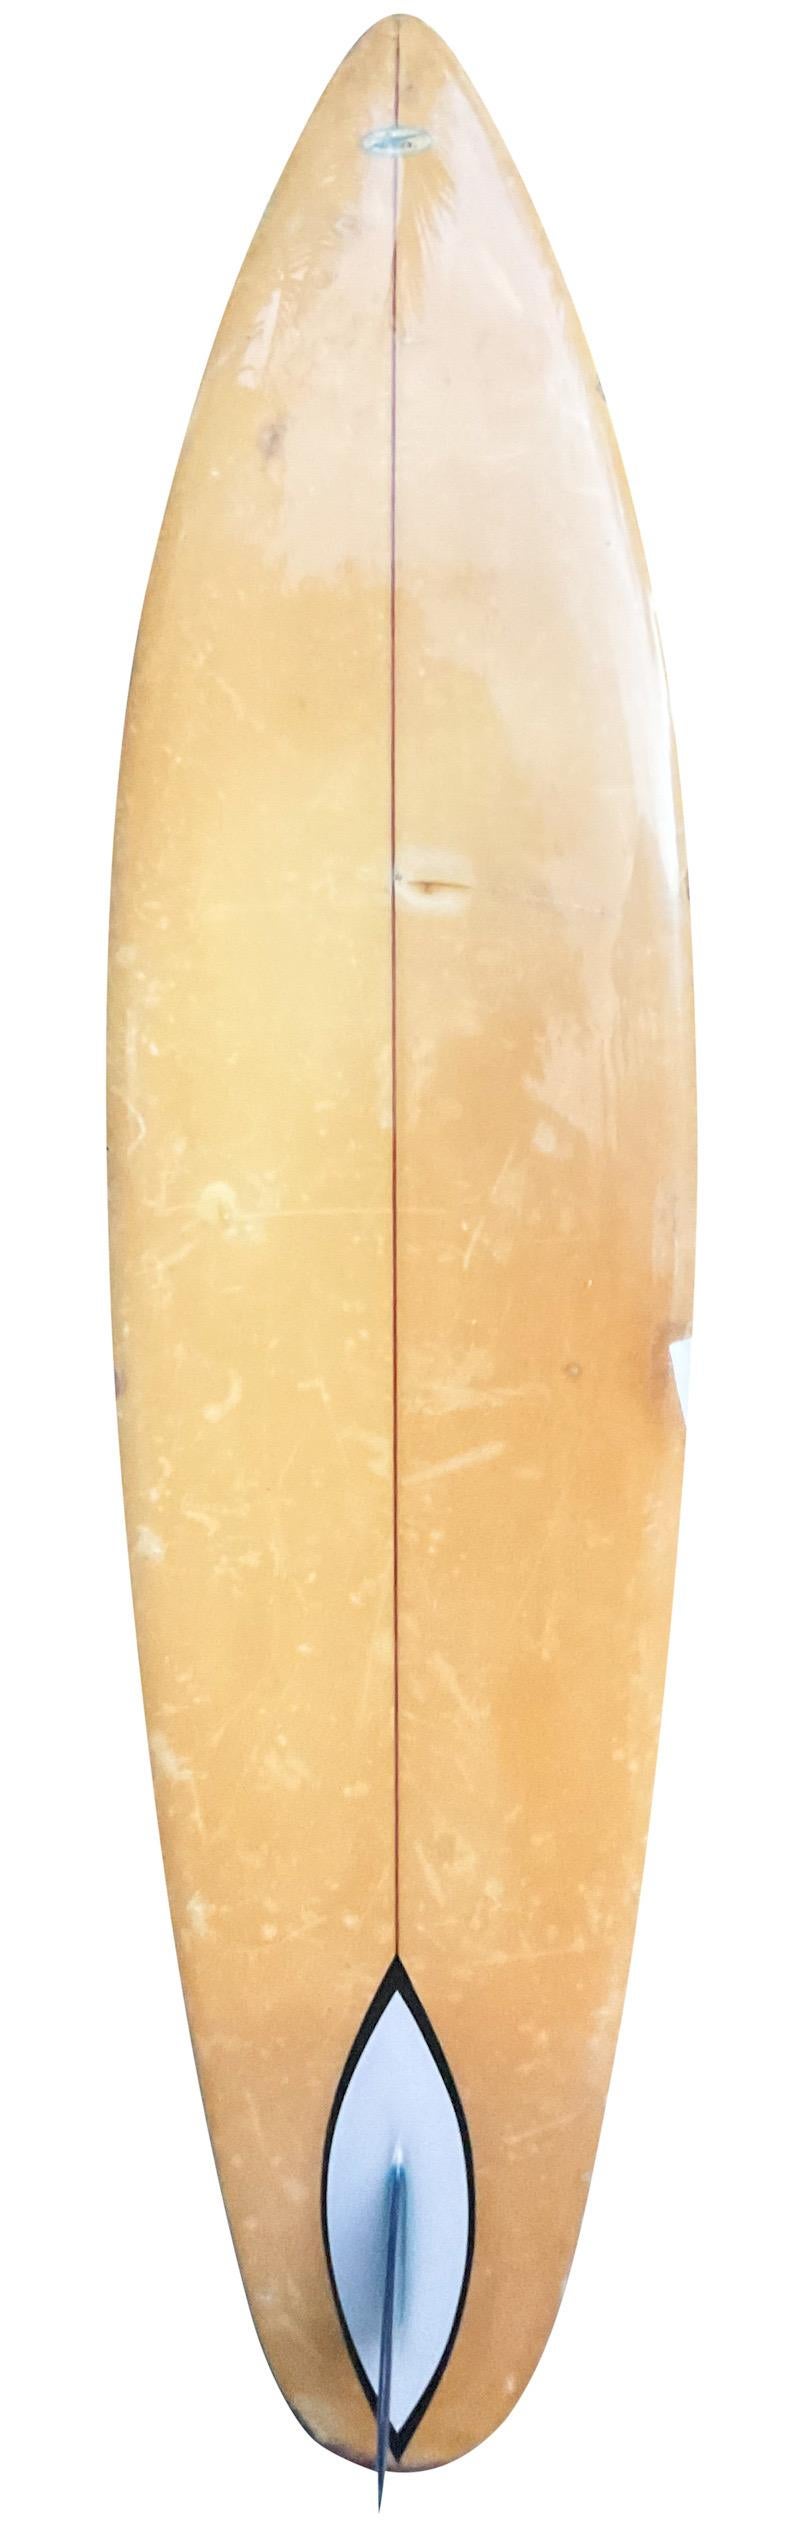 Ende der 1960er Jahre Gerry Lopez Hansen Surfboards Single Fin. Ein Surfboard-Shape aus der Übergangszeit, als die ersten Surfbretter aus Gründen der Manövrierfähigkeit kürzer geformt wurden. Entworfen von dem legendären Surfer Gerry Lopez. Ein